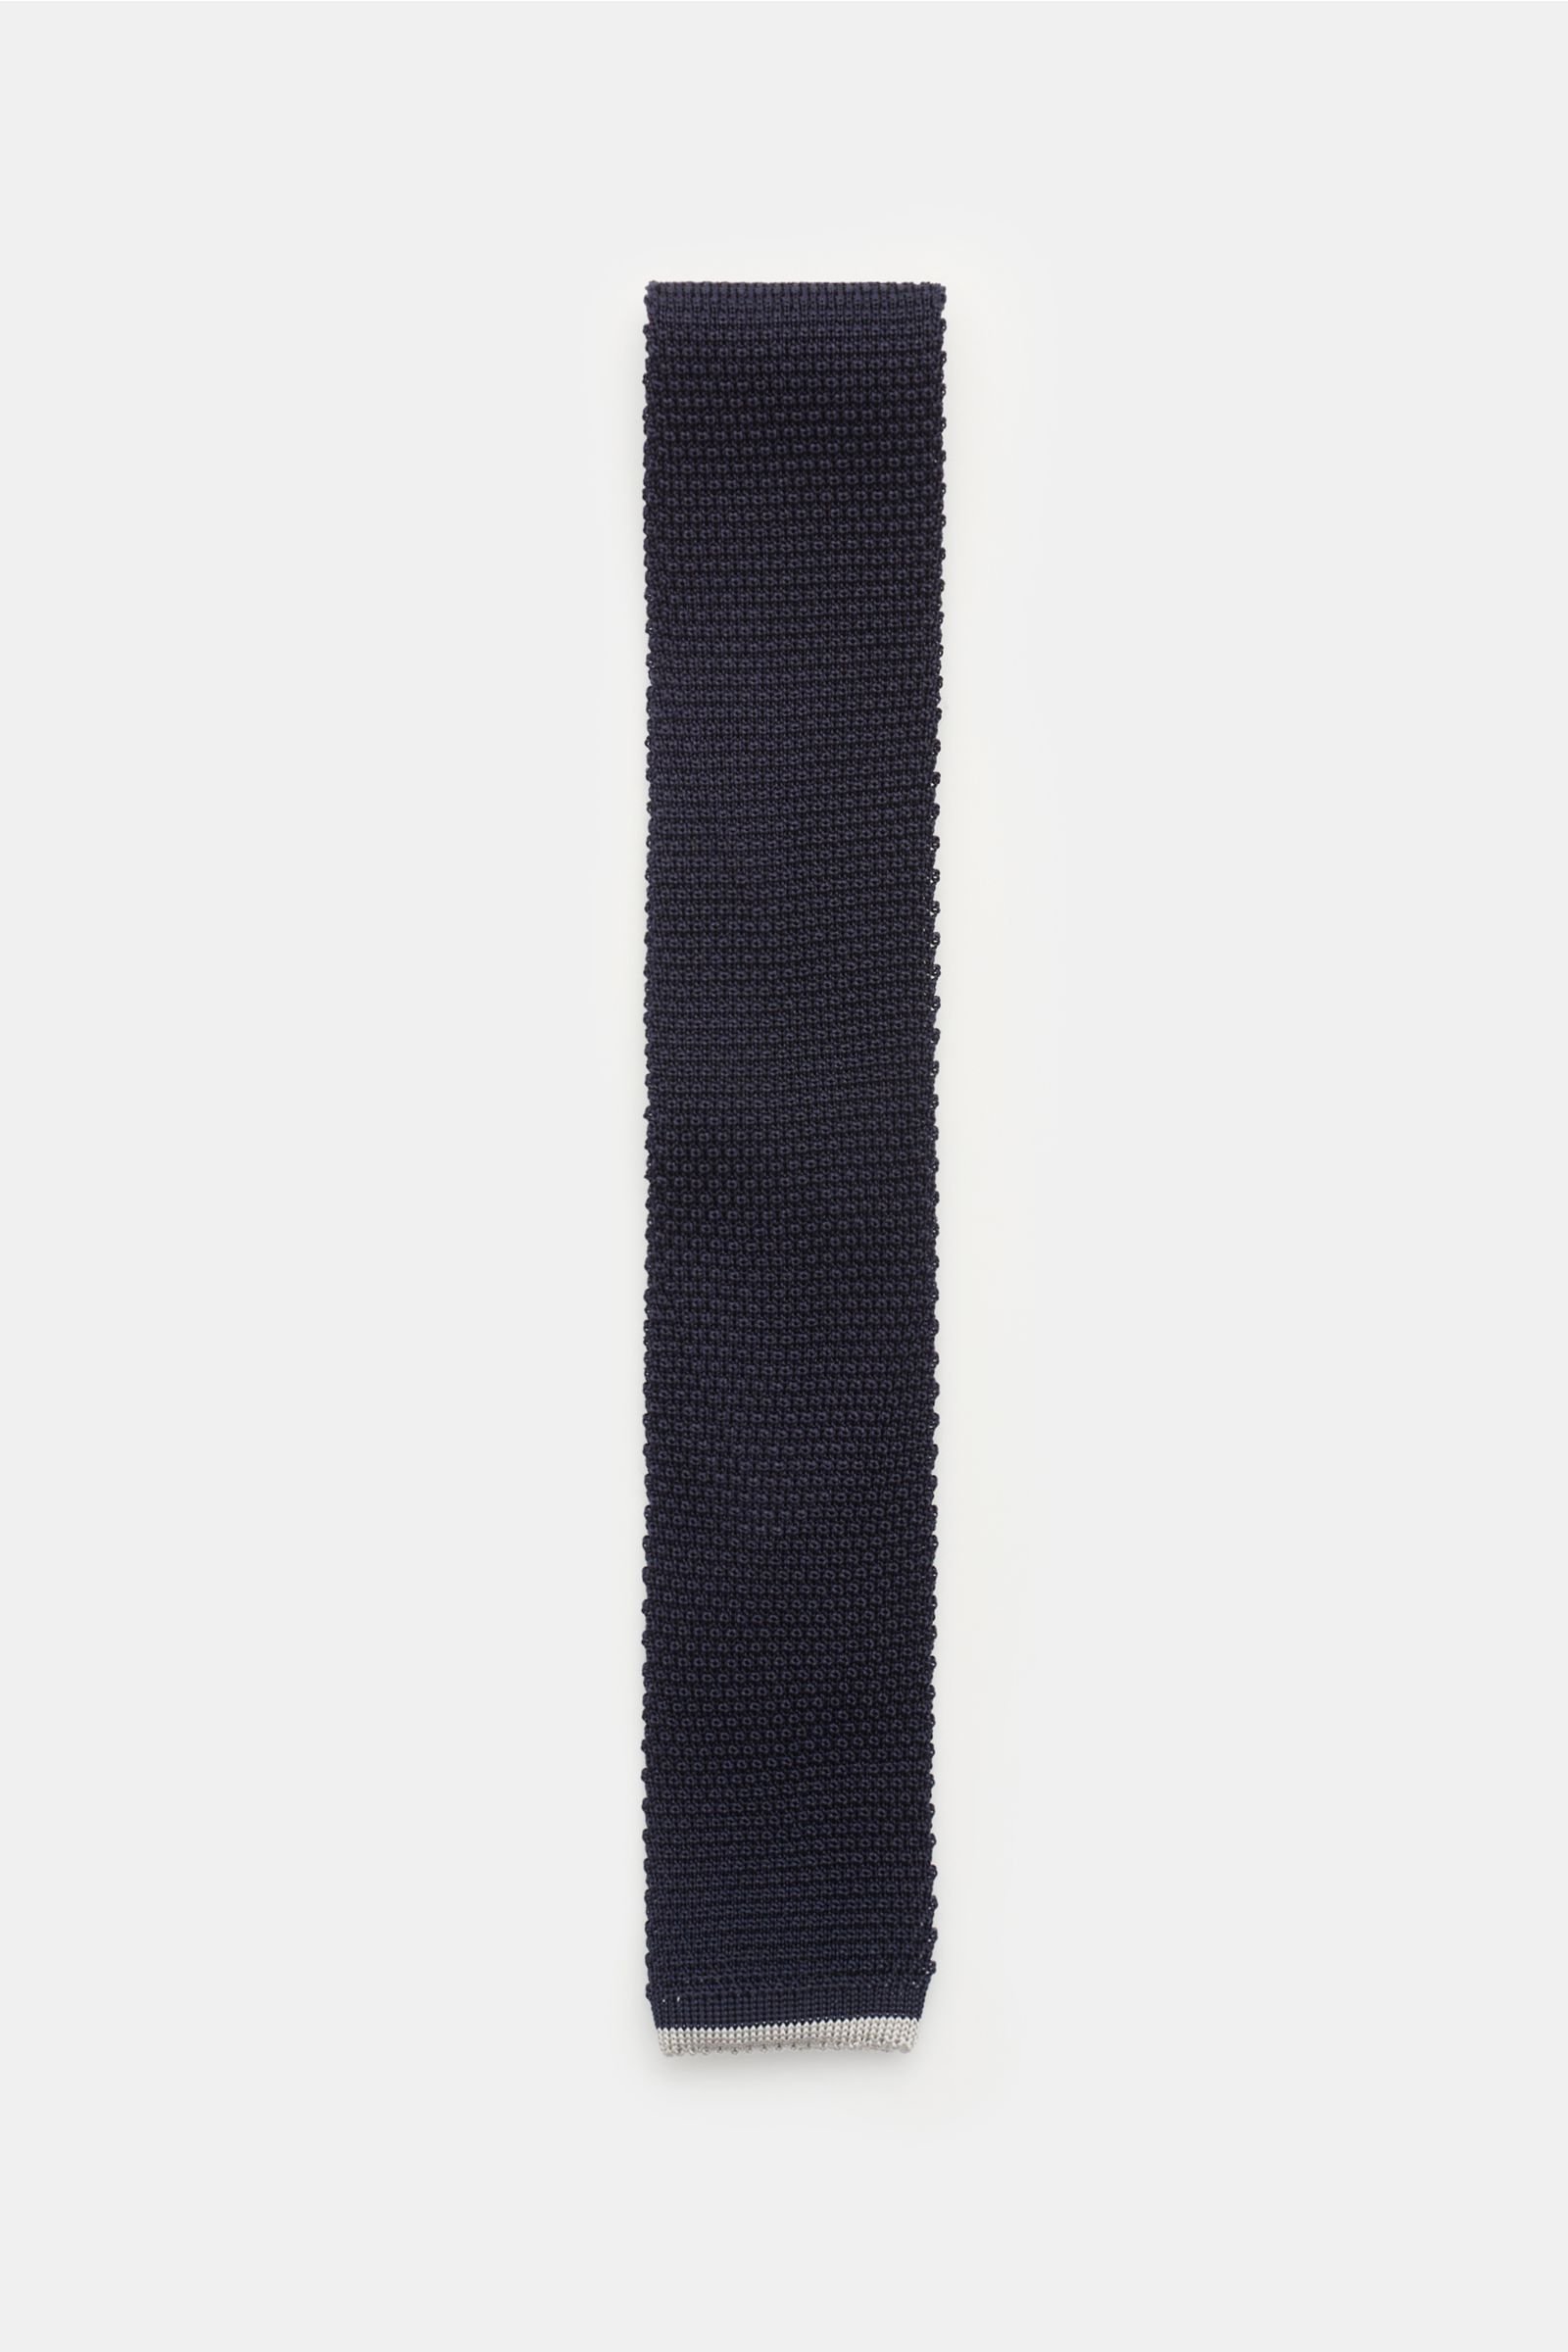 Silk knitted tie navy